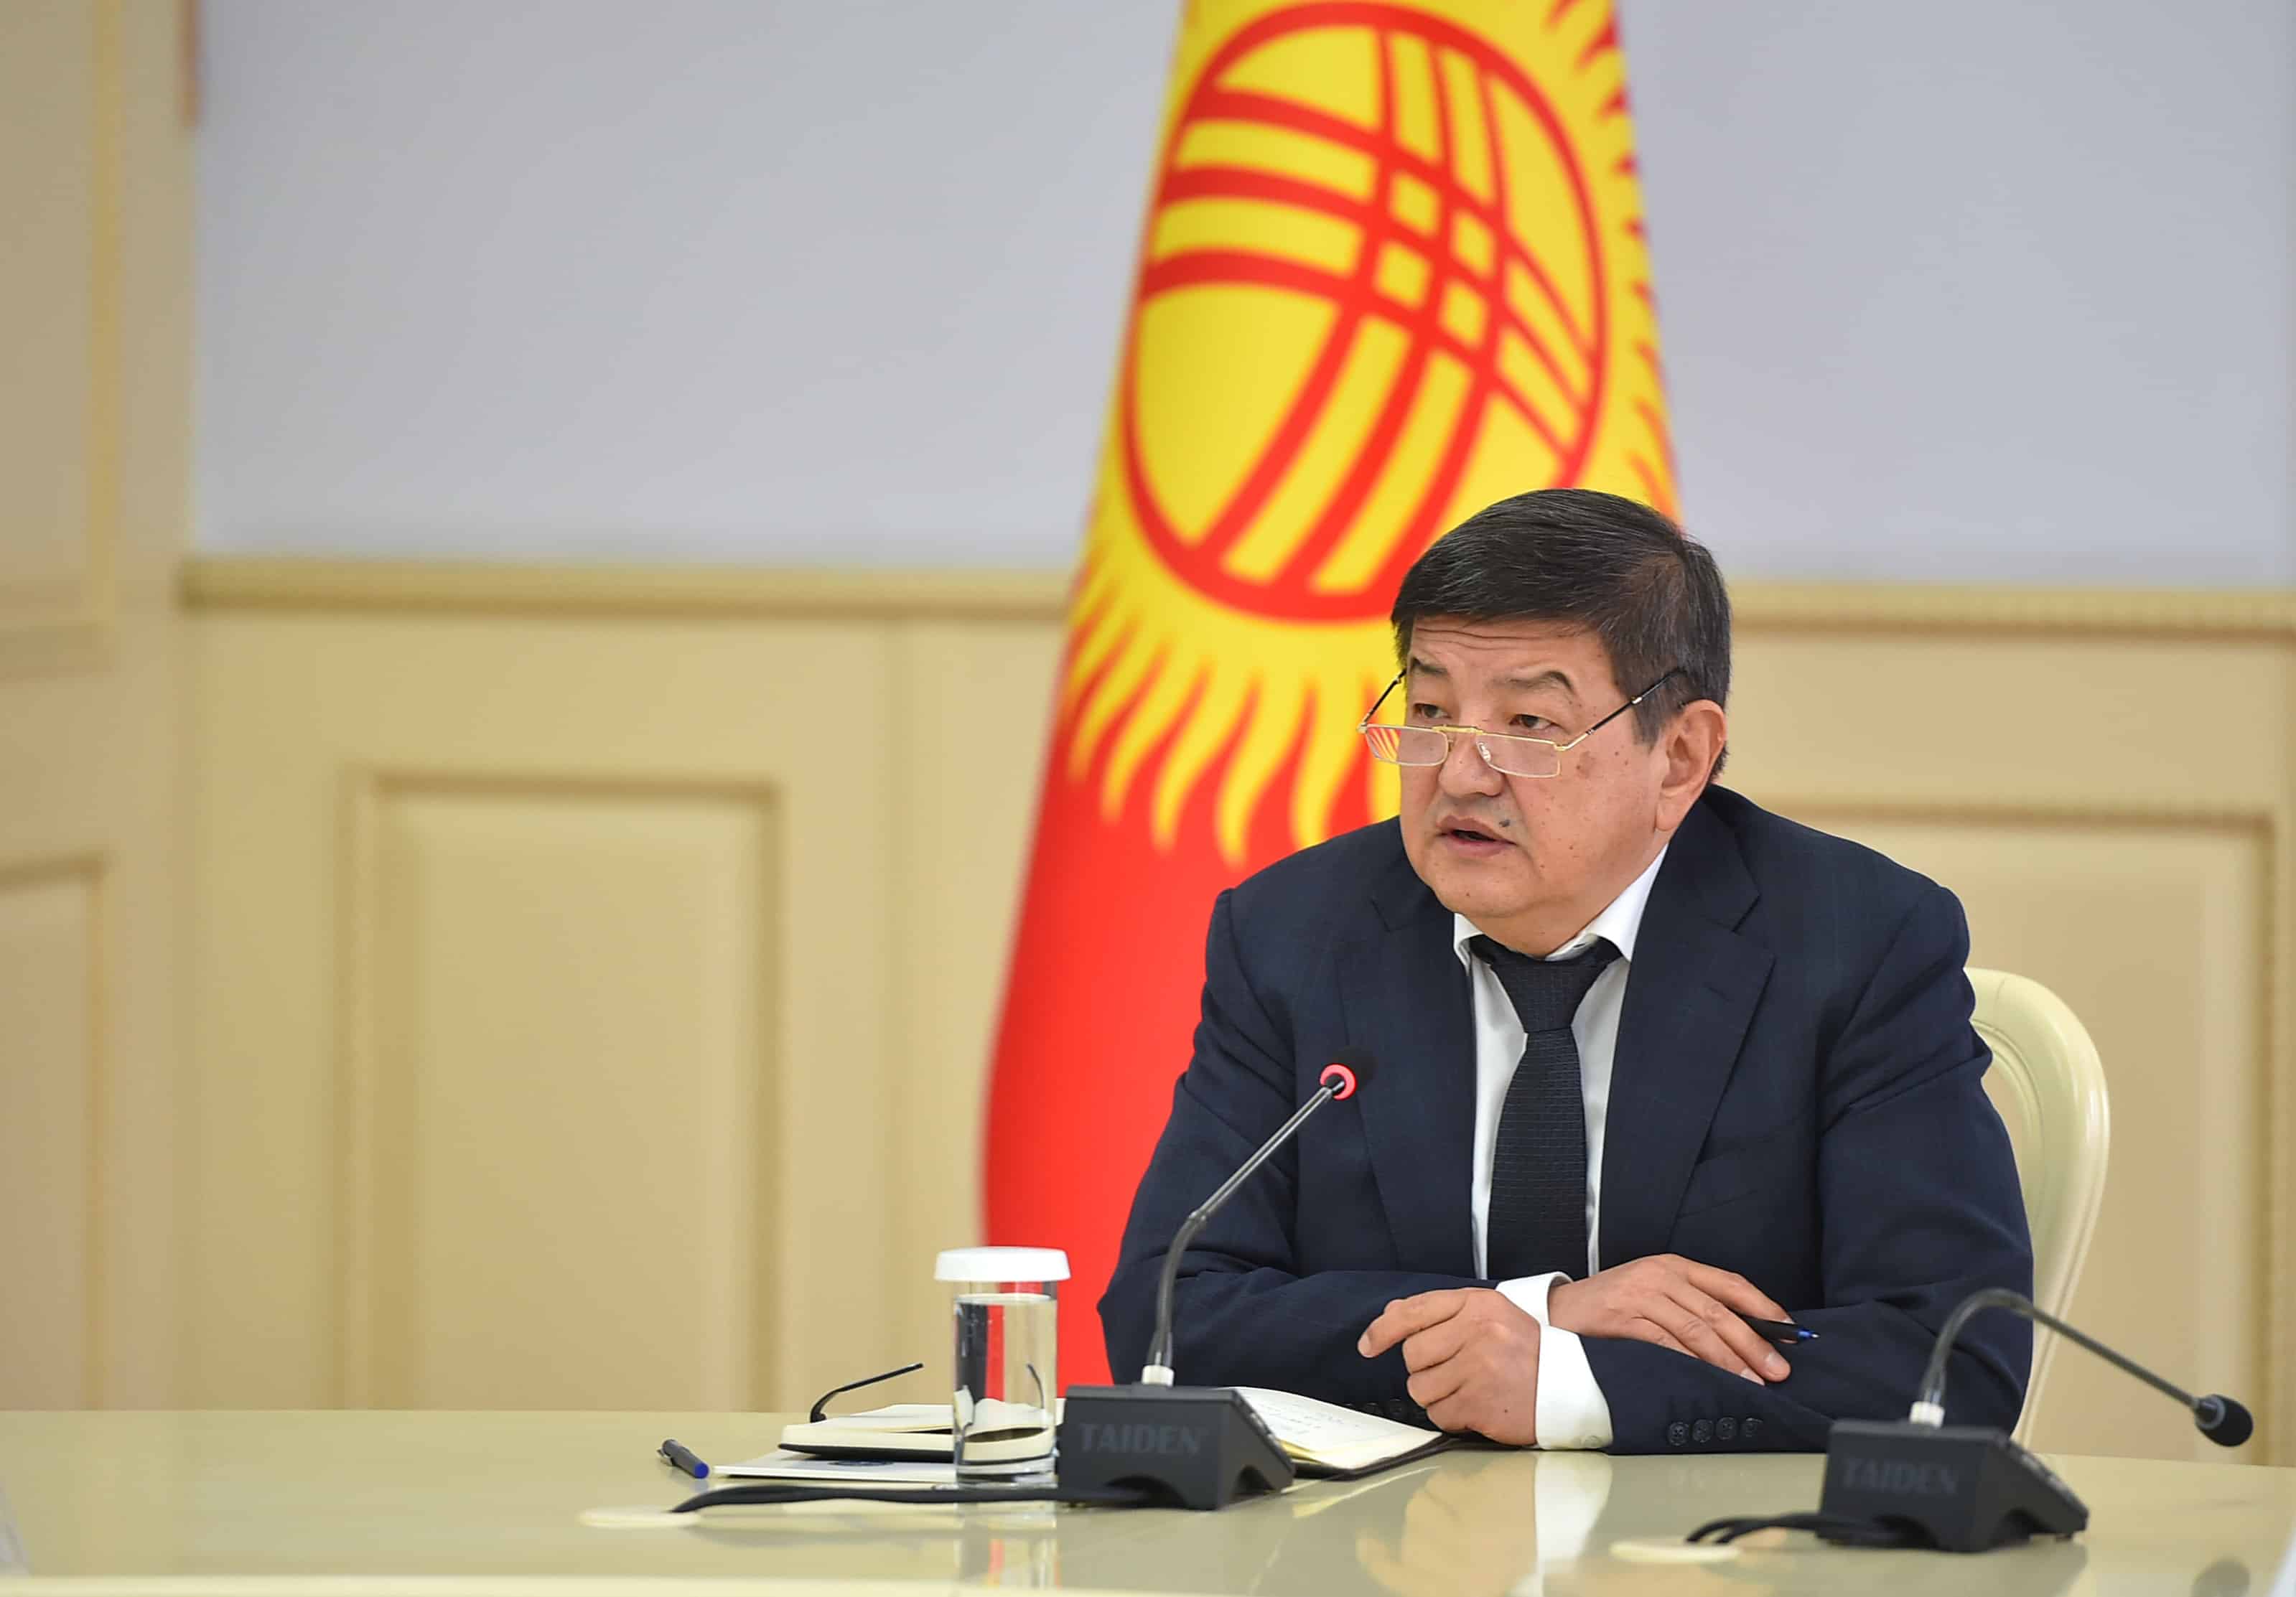 Акылбек Жапаров переговорил с и.о. премьер-министра Казахстана — пообещал помощь по линии ОДКБ